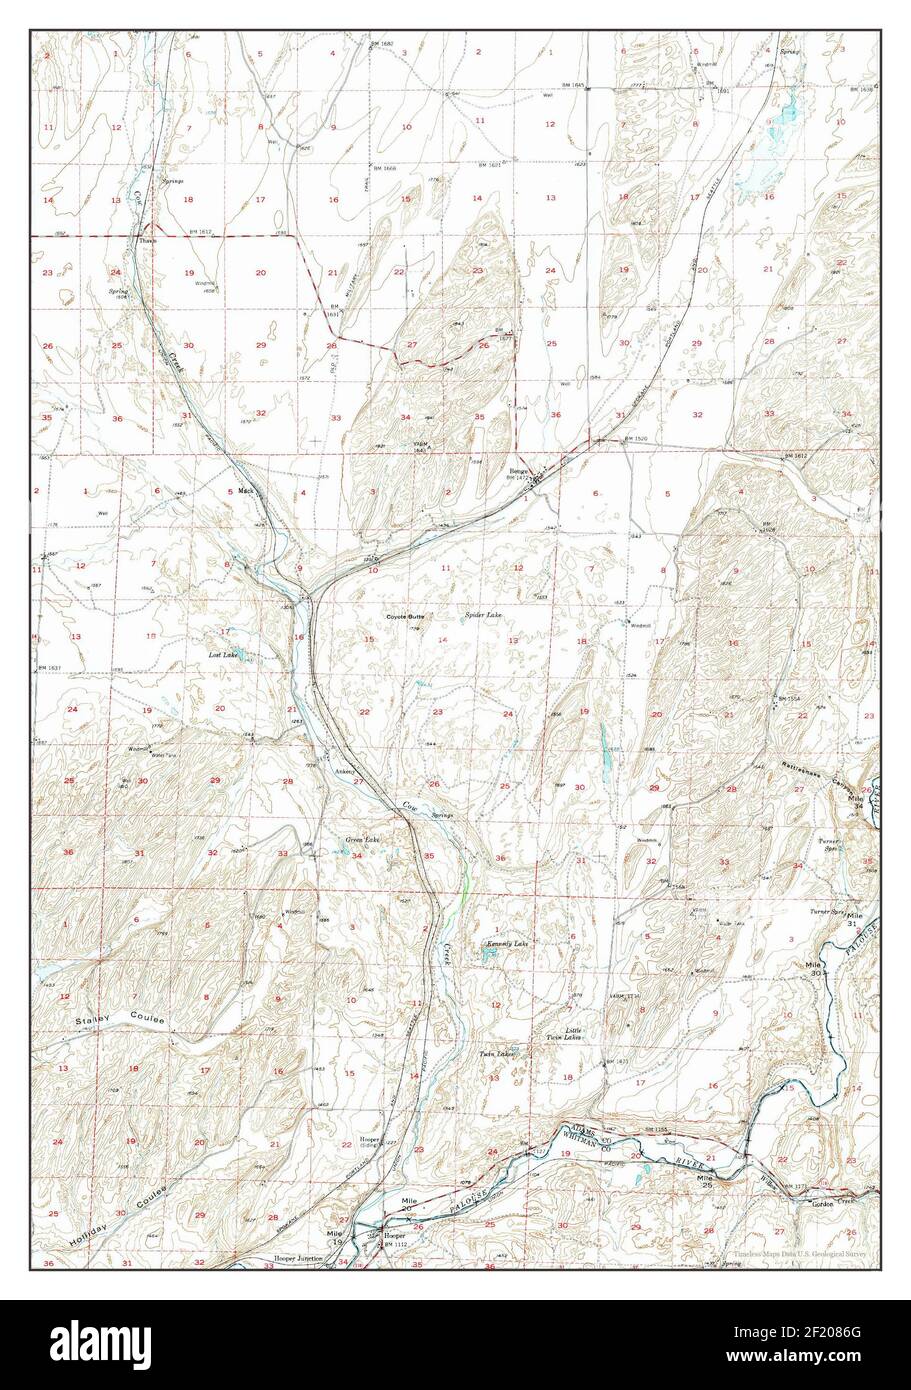 Benge, Washington, map 1950, 1:62500, United States of America by Timeless Maps, data U.S. Geological Survey Stock Photo